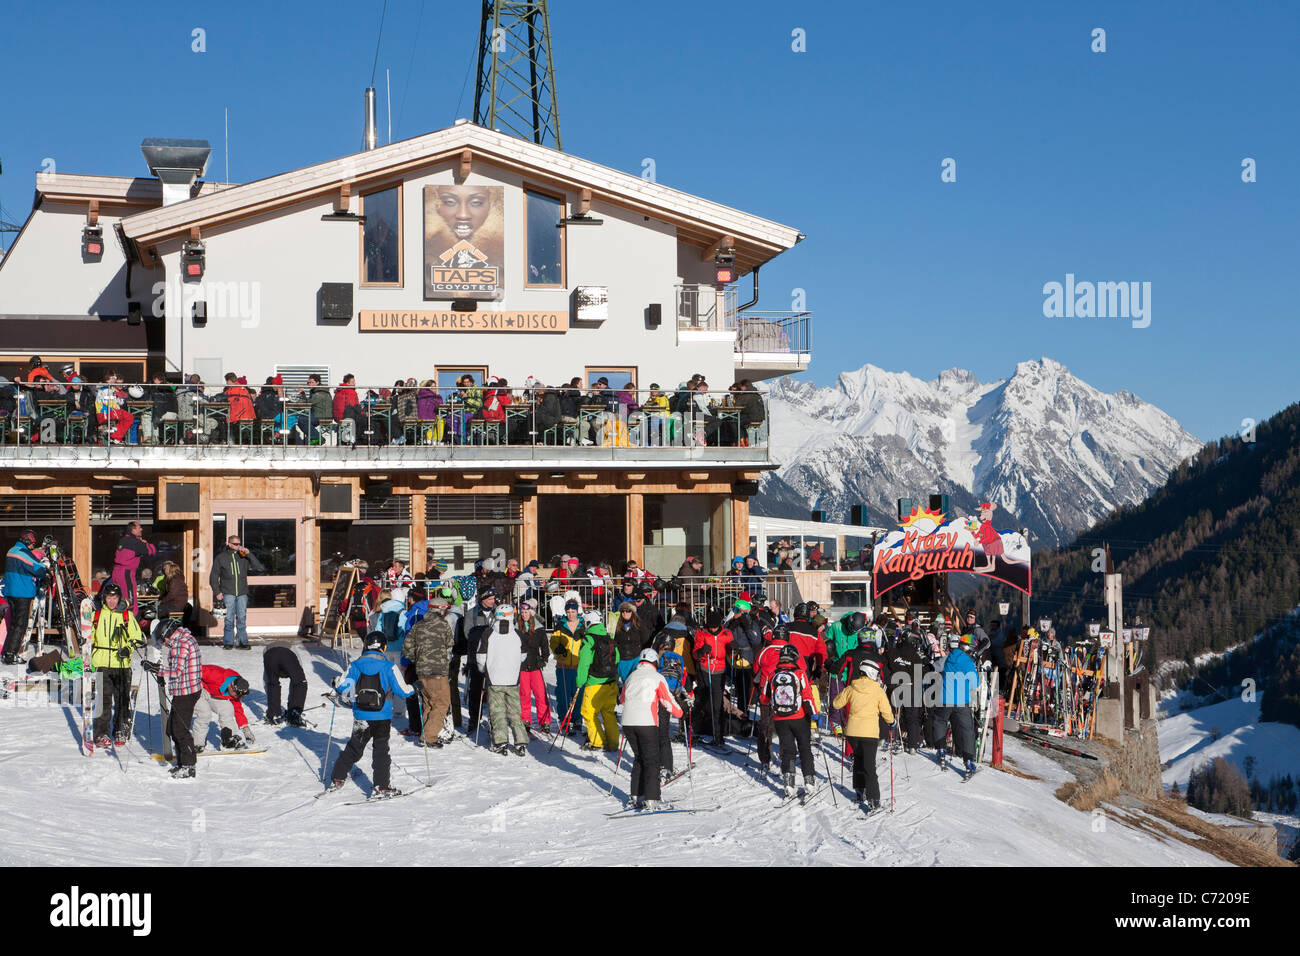 KRAZY KANGURUH, skieurs chalet de ski, piste de ski, ST. ANTON am Arlberg, Tyrol, Autriche Banque D'Images